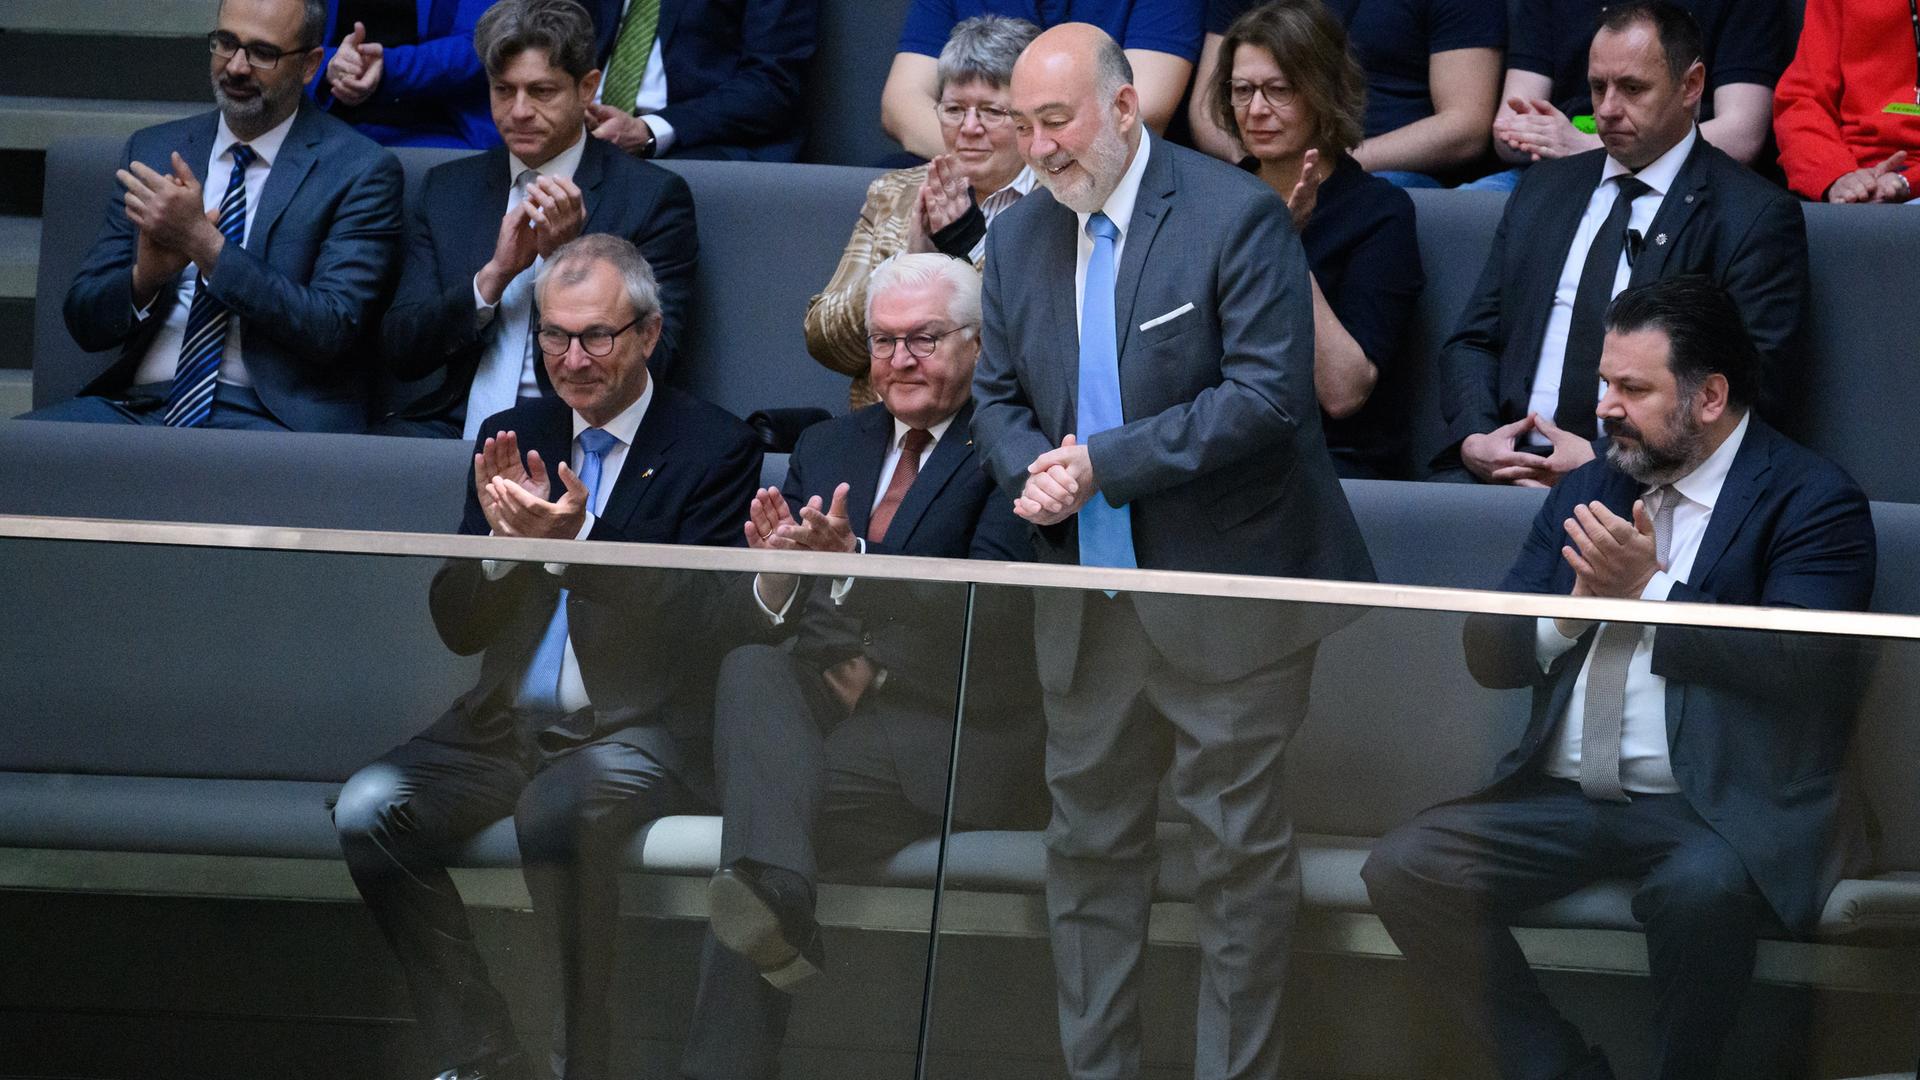 Bundespräsident Frank-Walter Steinmeier (SPD) nimmt zusammen mit Volker Beck (Grüne),  und Ron Prosor, Botschafter von Israel in Deutschland, sowie Gideon Joffe, Vorsitzender der Jüdischen Gemeinde zu Berlin, an der Debatte zum 75. Jahrestag der Gründung Israels in der Plenarsitzung im Deutschen Bundestag teil.